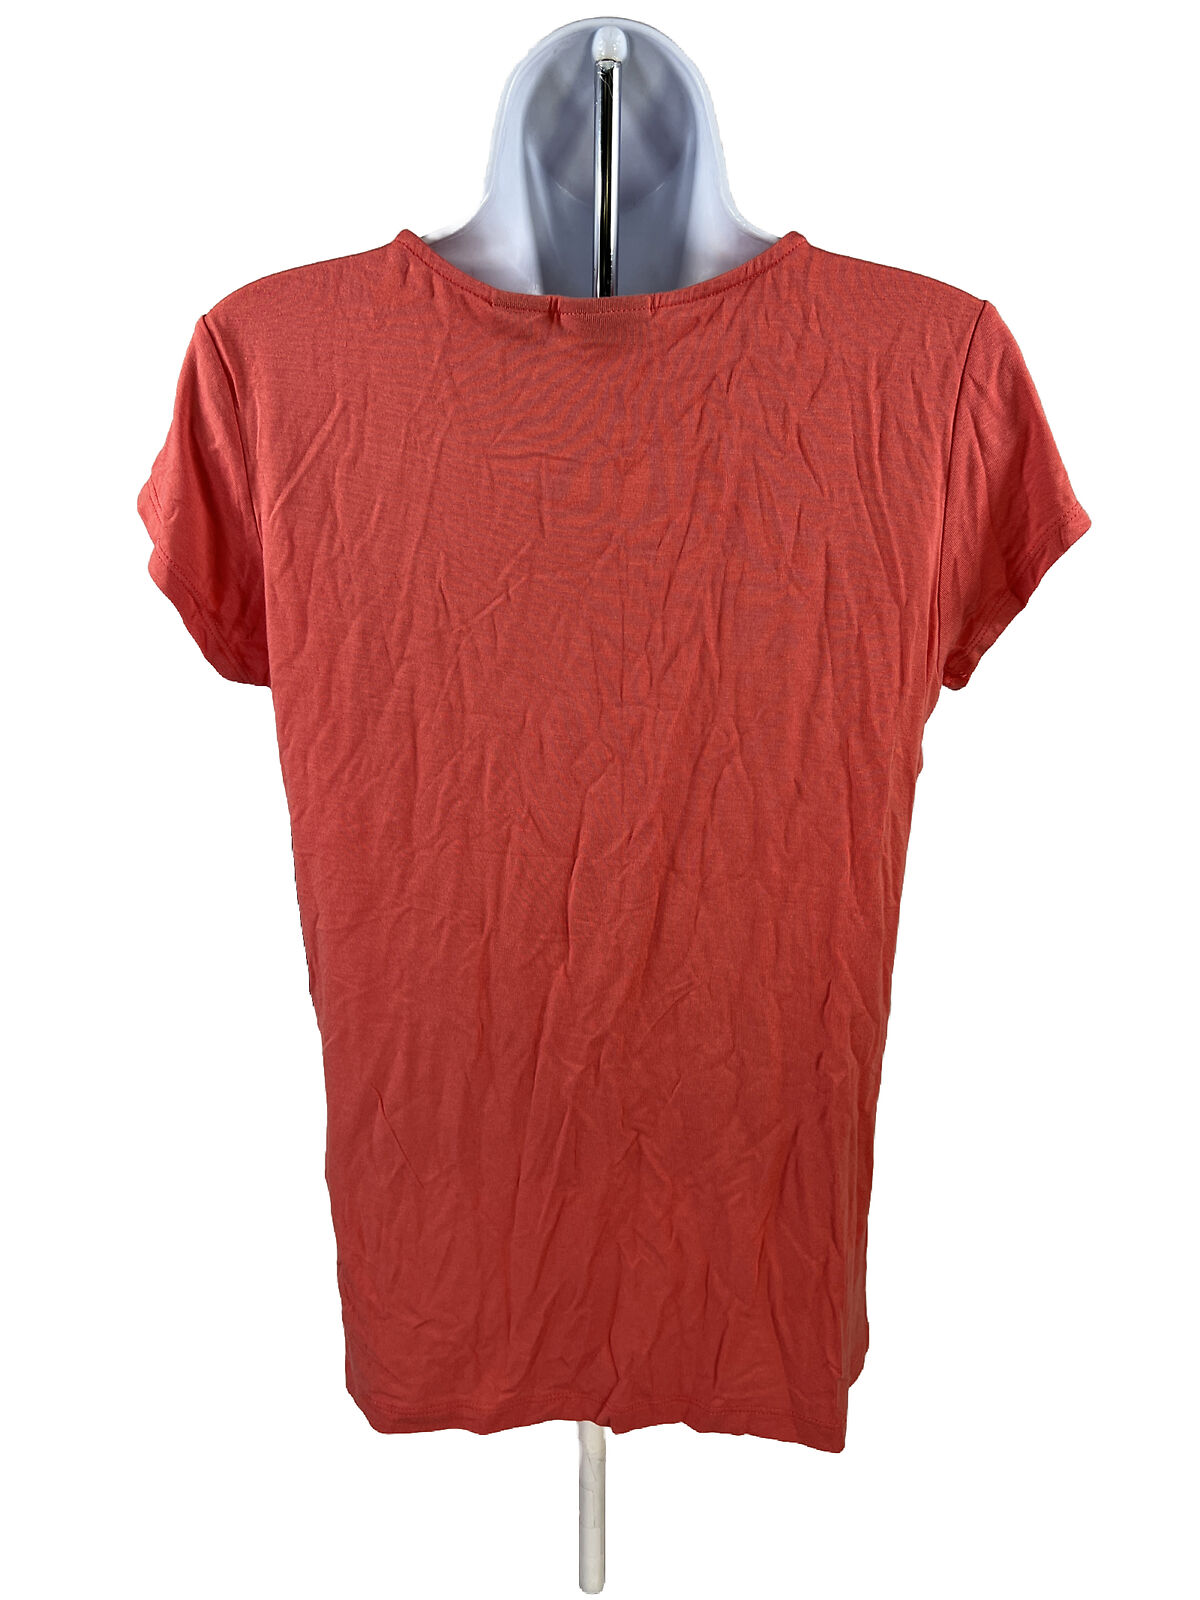 NEW Tahari Women's Pink/Orange Short Sleeve Basic T-Shirt - M